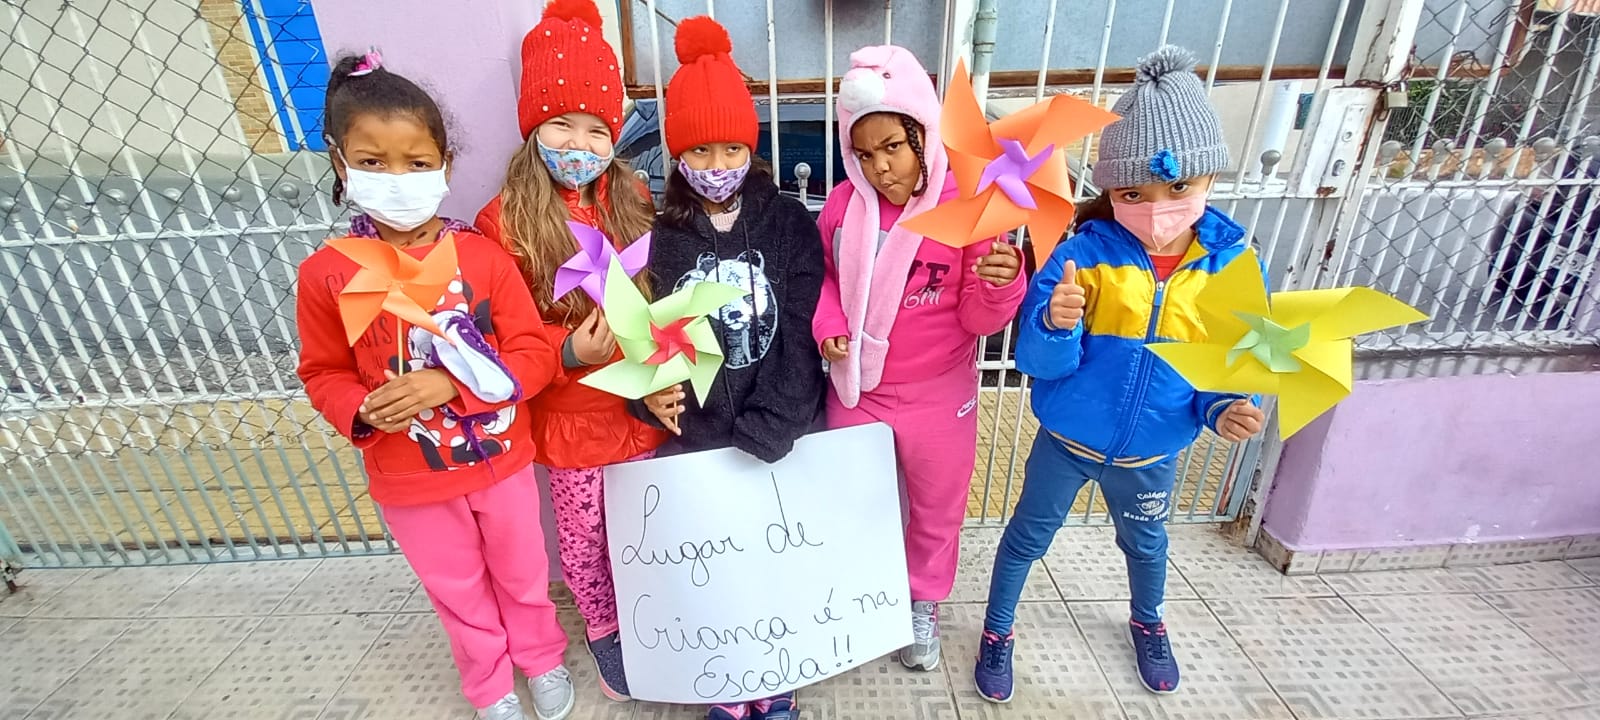 Cinco crianças reunidas, cada uma segurando um cata-vento, símbolo da campanha, a criança do meio está segurando um cartaz escrito “lugar de criança é na escola”.